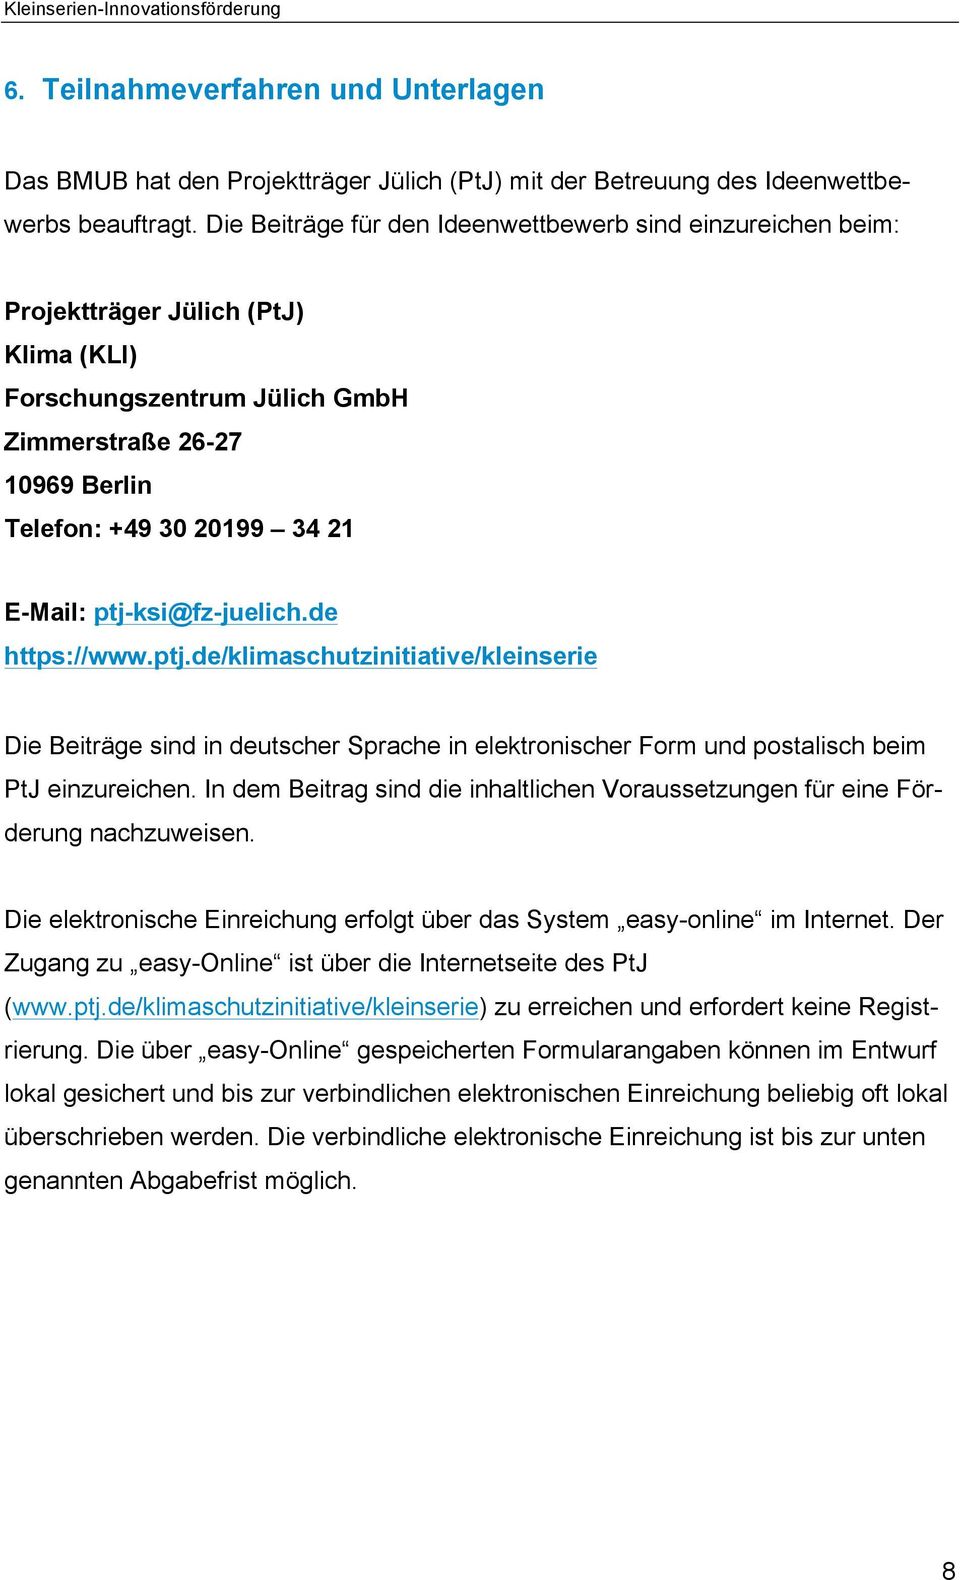 ptj-ksi@fz-juelich.de https://www.ptj.de/klimaschutzinitiative/kleinserie Die Beiträge sind in deutscher Sprache in elektronischer Form und postalisch beim PtJ einzureichen.